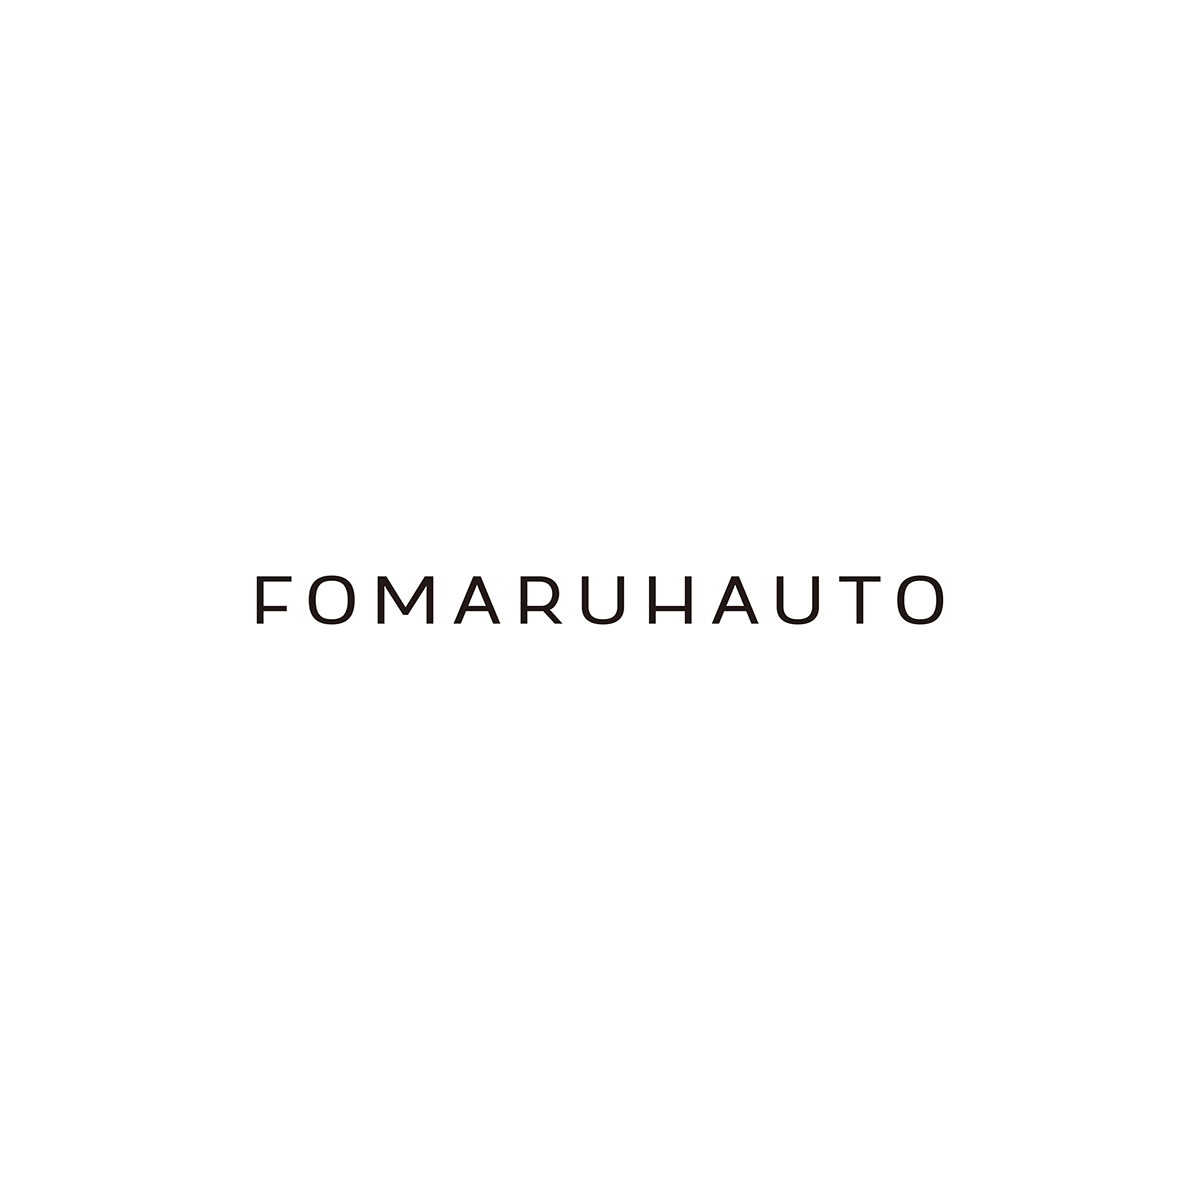 設計 視覺設計 visual design identity brand Logo Design FOMARUHAUTO FOMARUHAUTO 北落師門 北落師門 識別